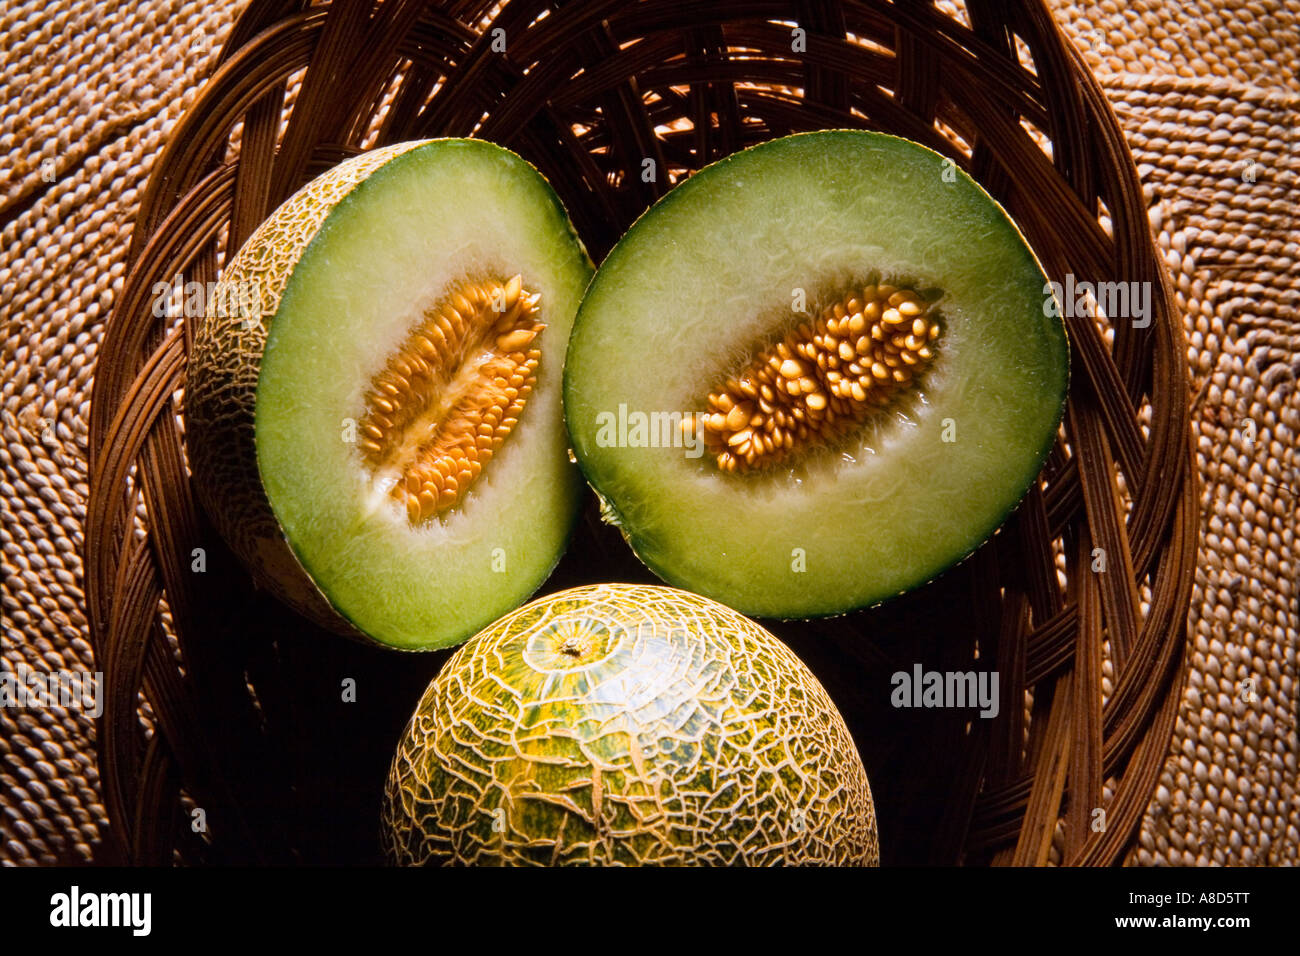 Tranches de melon Sharlyn dans panier montrant l'intérieur la chair et graines Banque D'Images